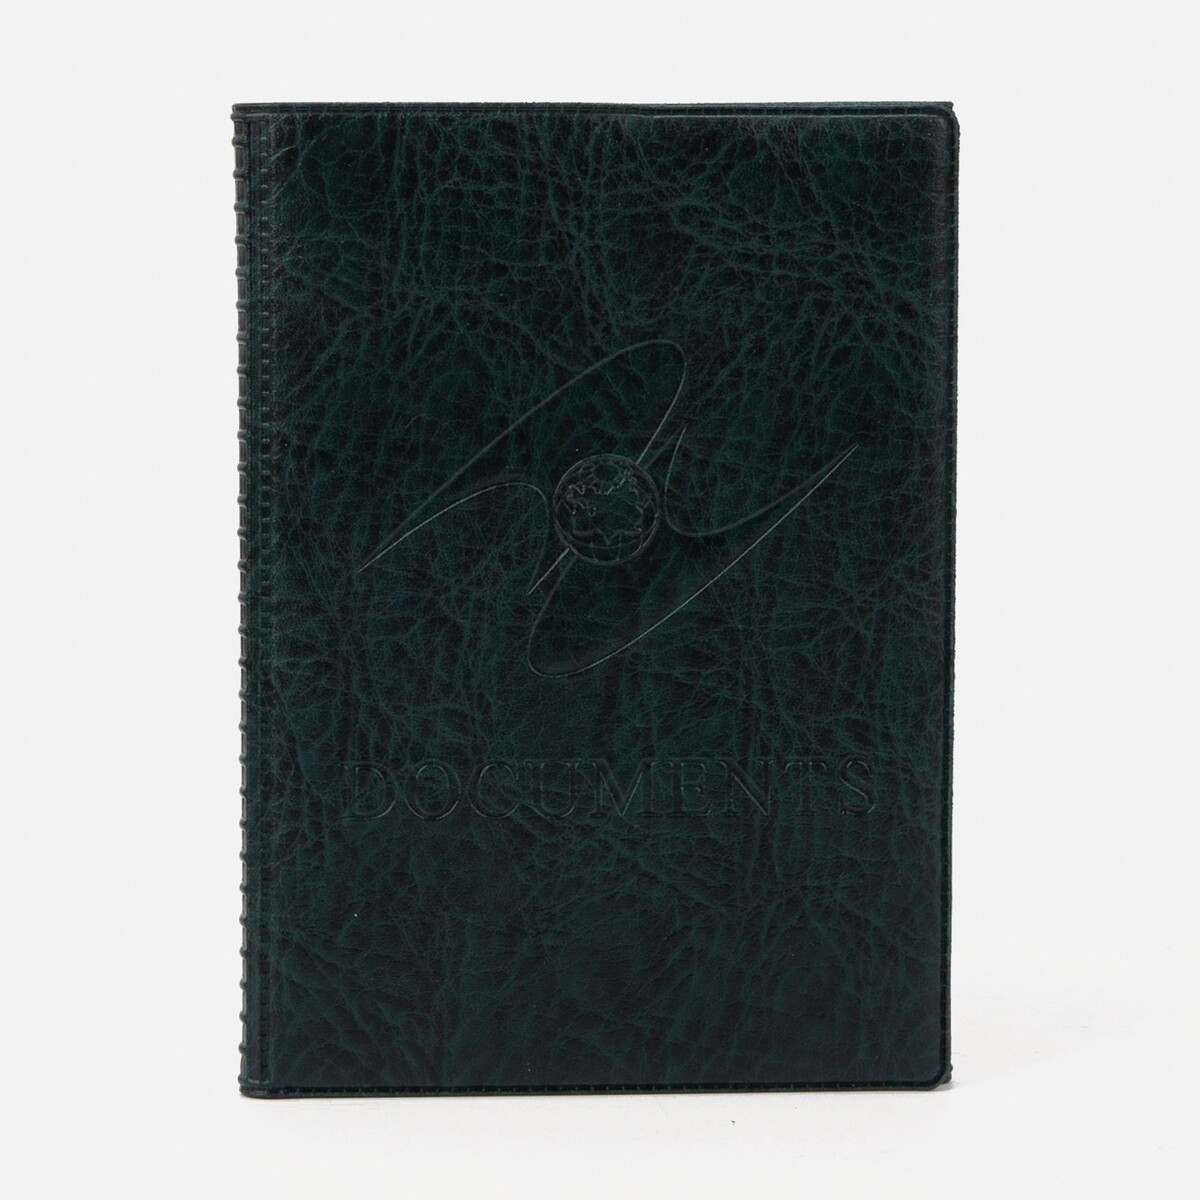 Обложка для паспорта и автодокументов, цвет темно-зеленый